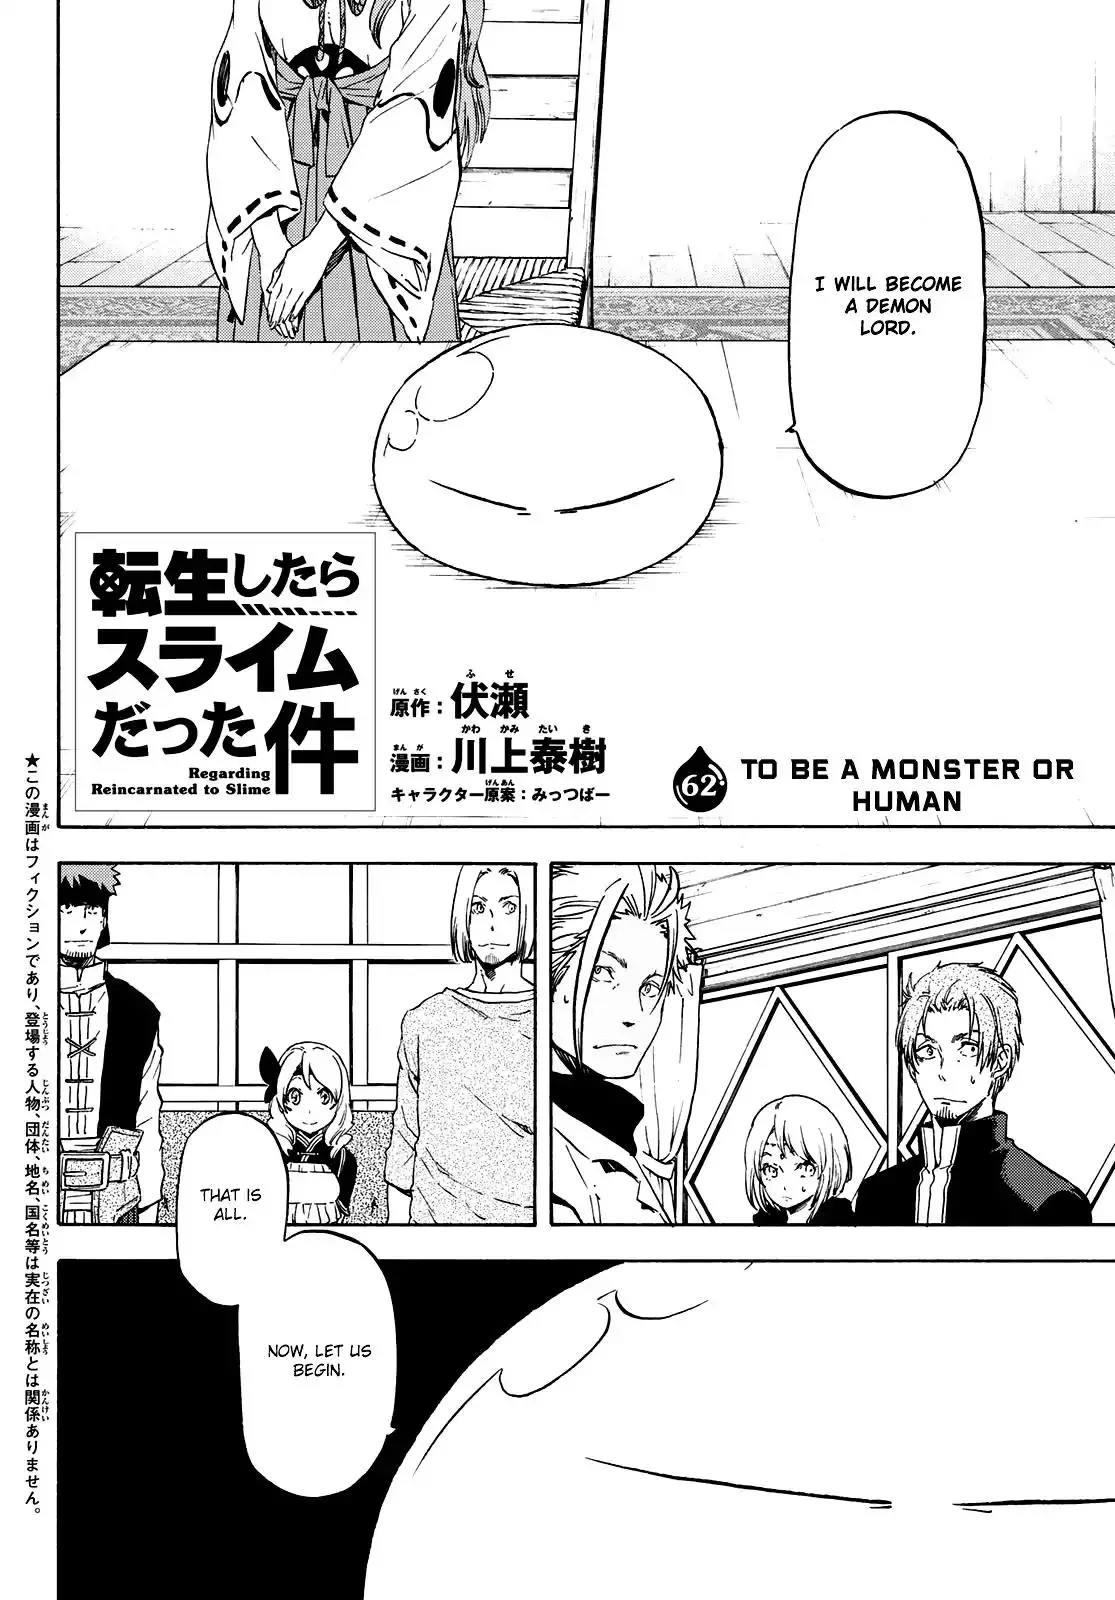 Tensei Shitara Slime Datta Ken - 62 page 2